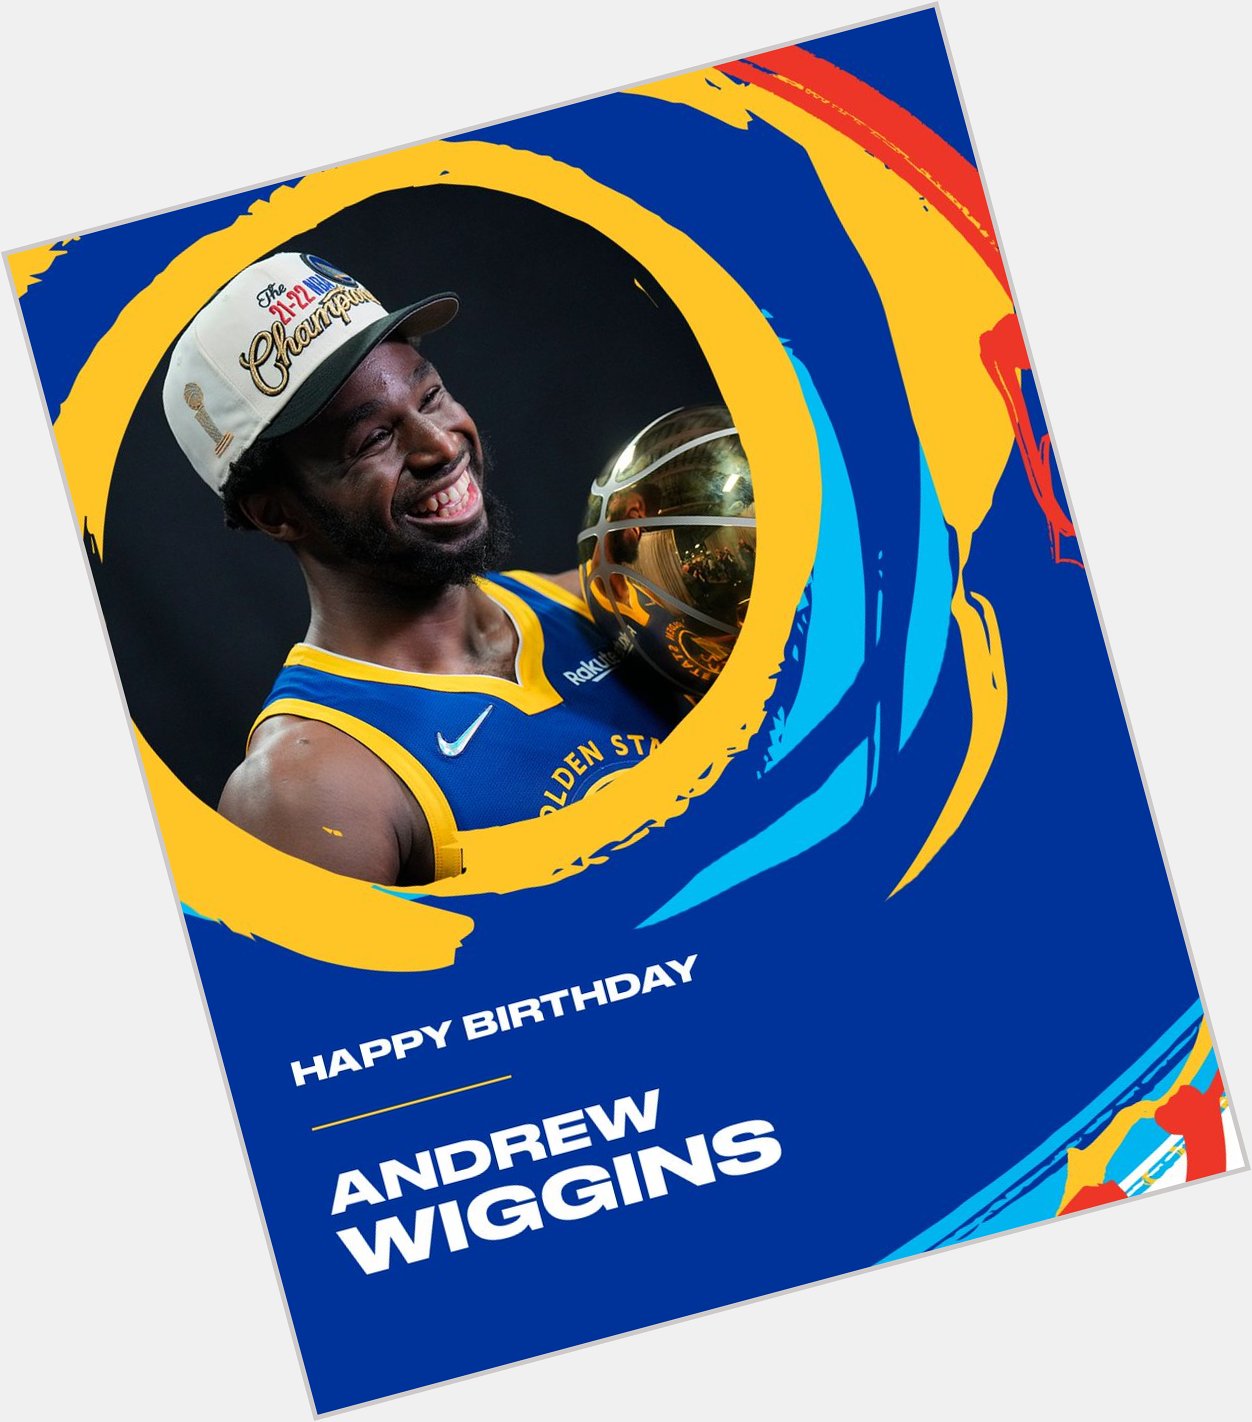   Golden State Warriors ·
23 févr.
Happy Birthday, Andrew Wiggins! 